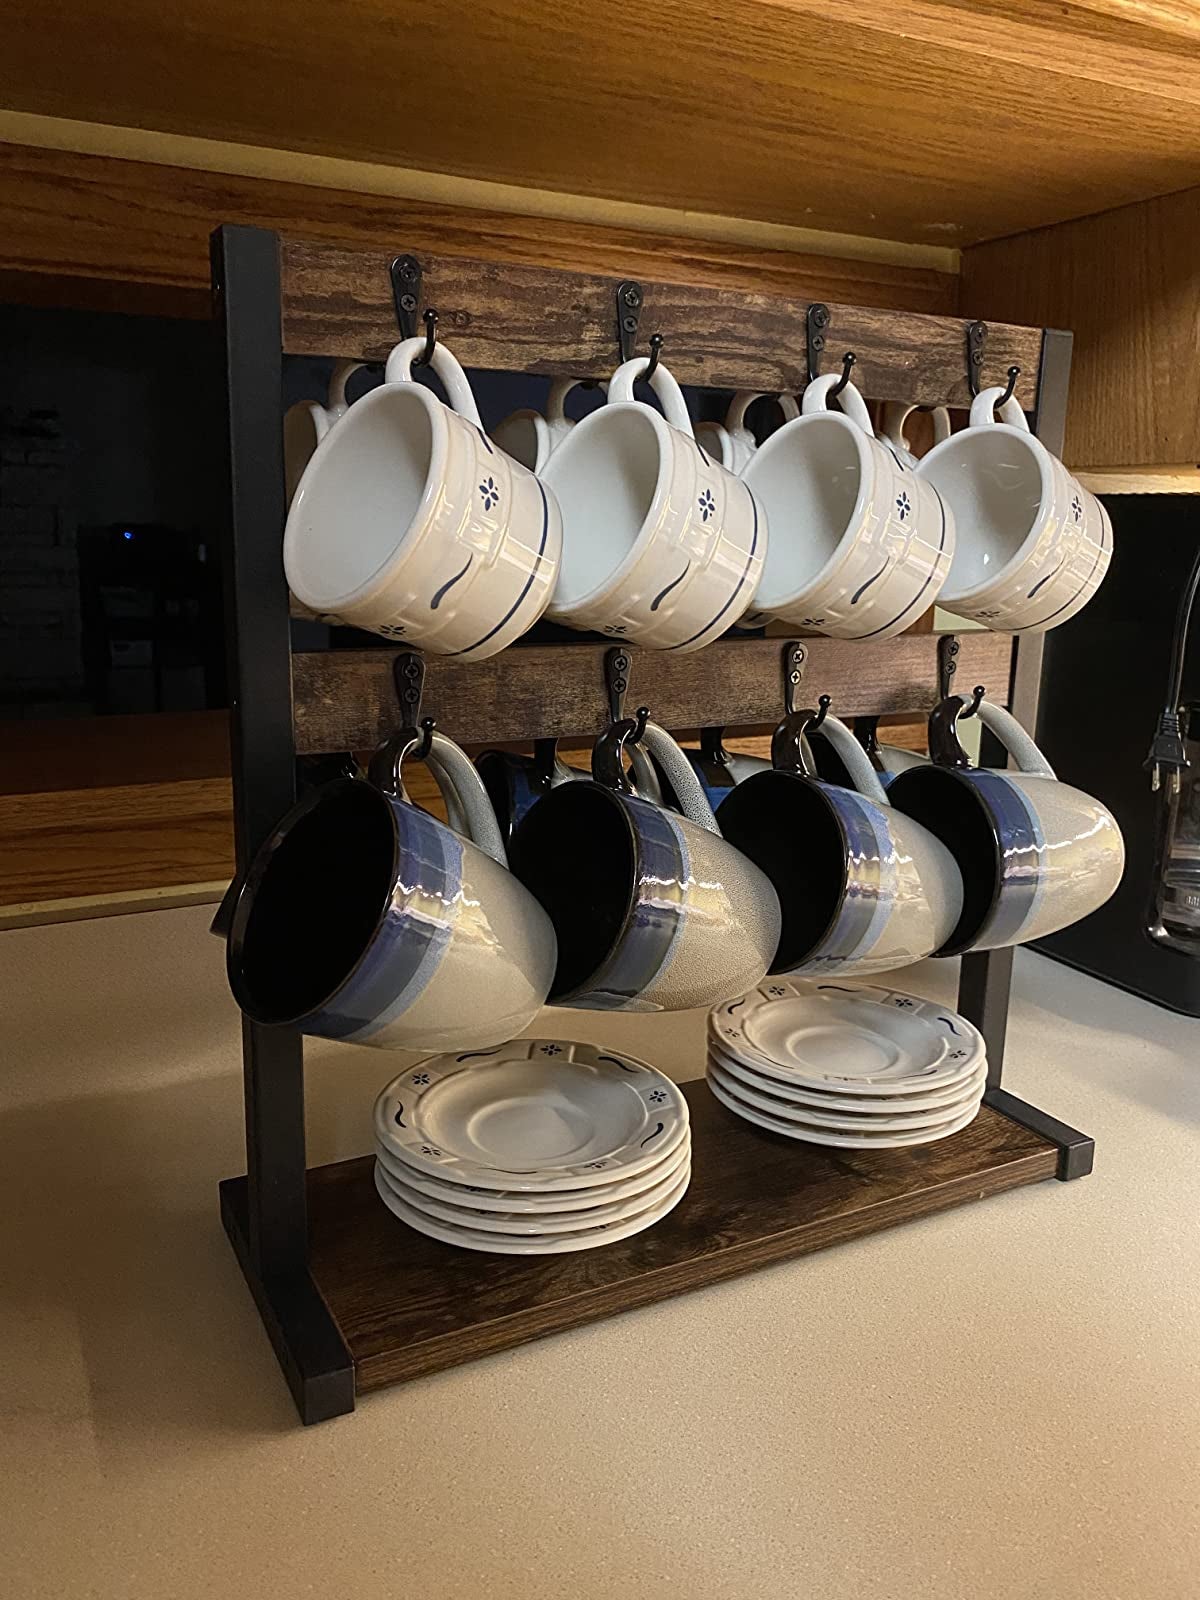 15 Mug Holders To Organize Your Mug Collection